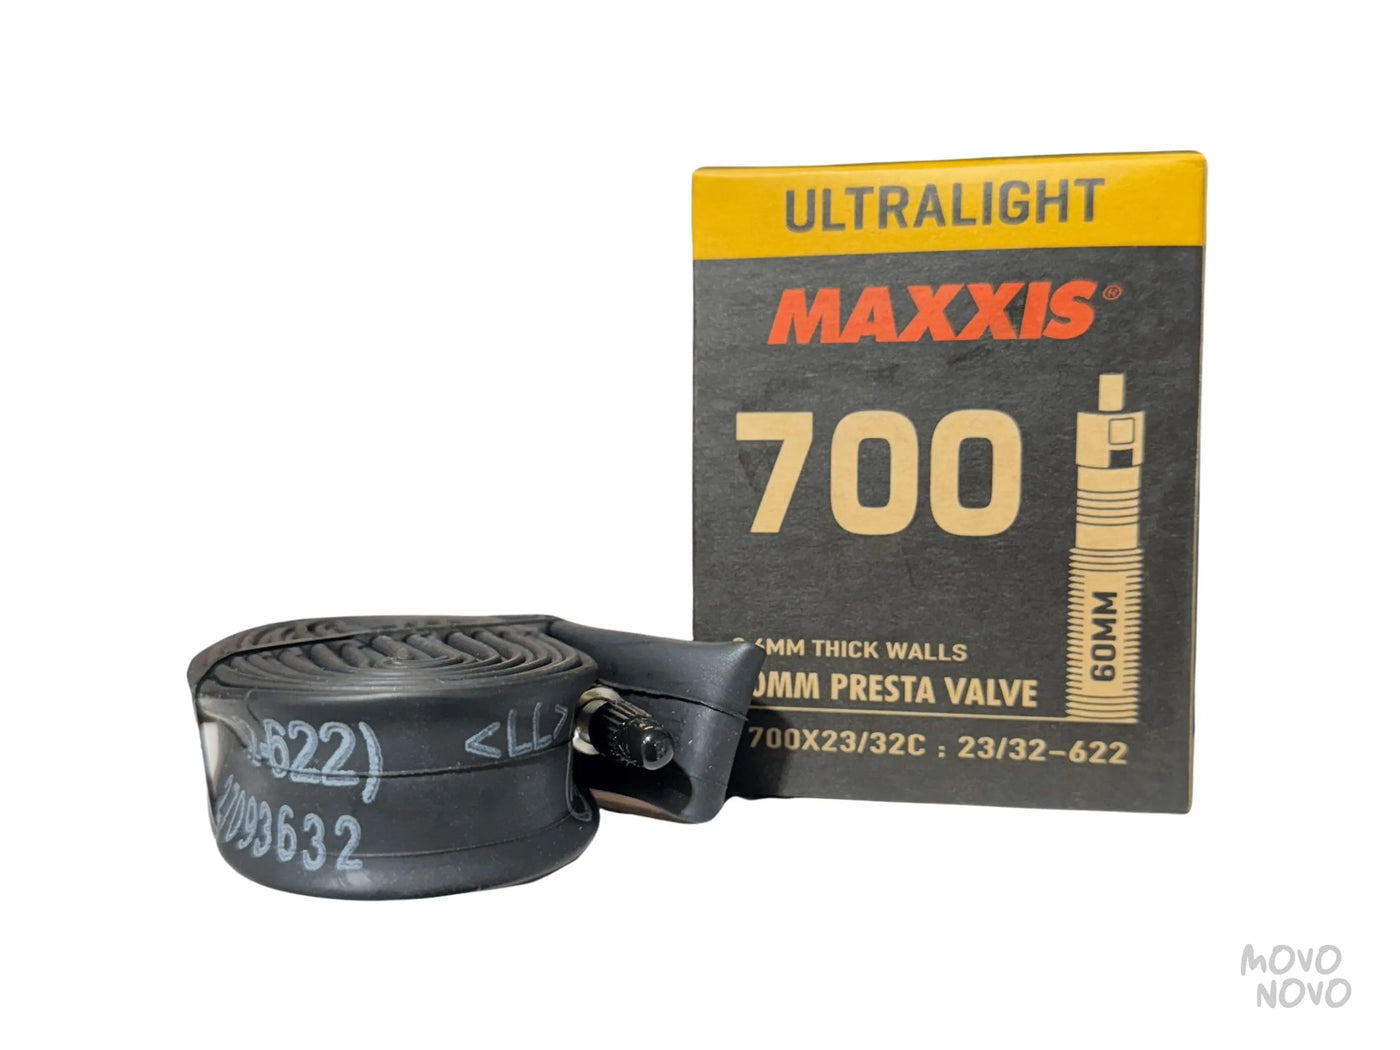 Camara Maxxis Ultralight 700x23/32 60mm